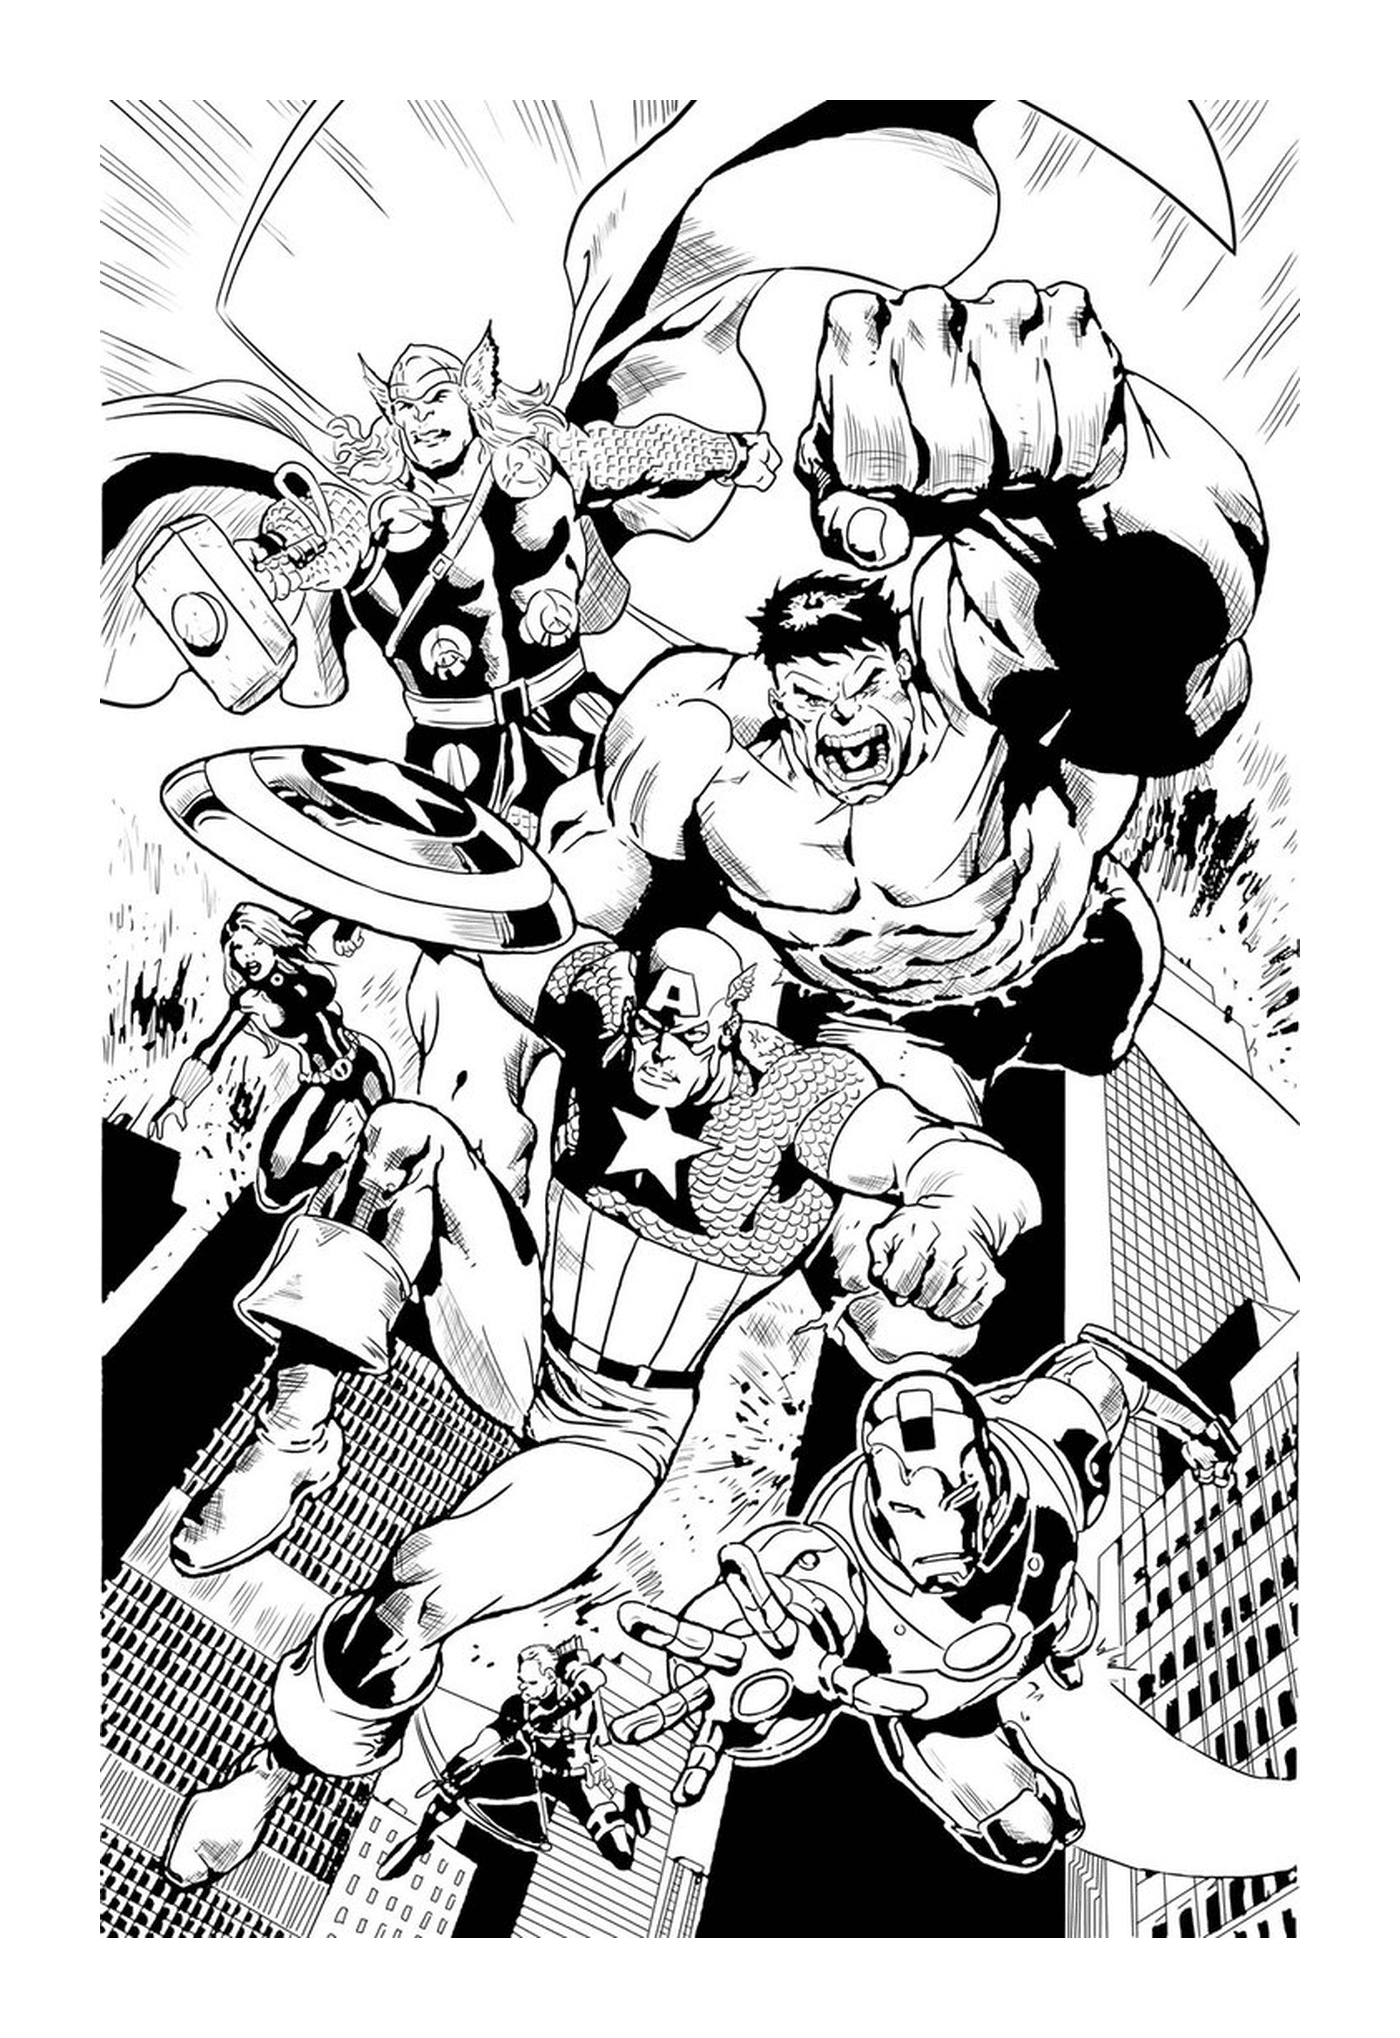  Preto e branco, um grupo de super-heróis 